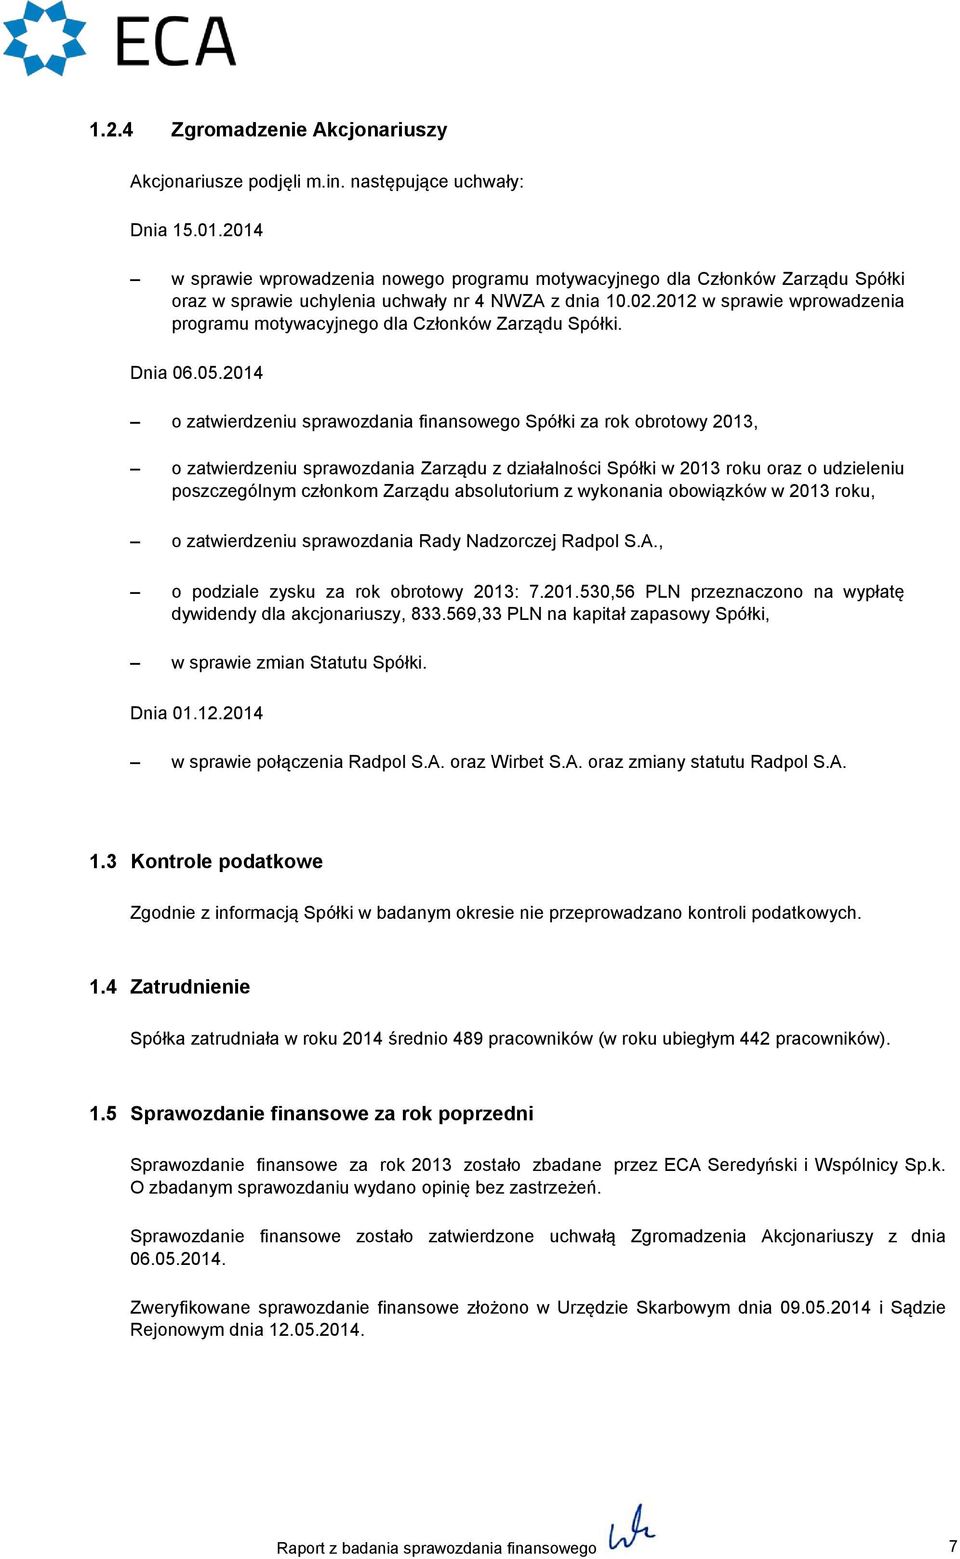 2012 w sprawie wprowadzenia programu motywacyjnego dla Członków Zarządu Spółki. Dnia 06.05.